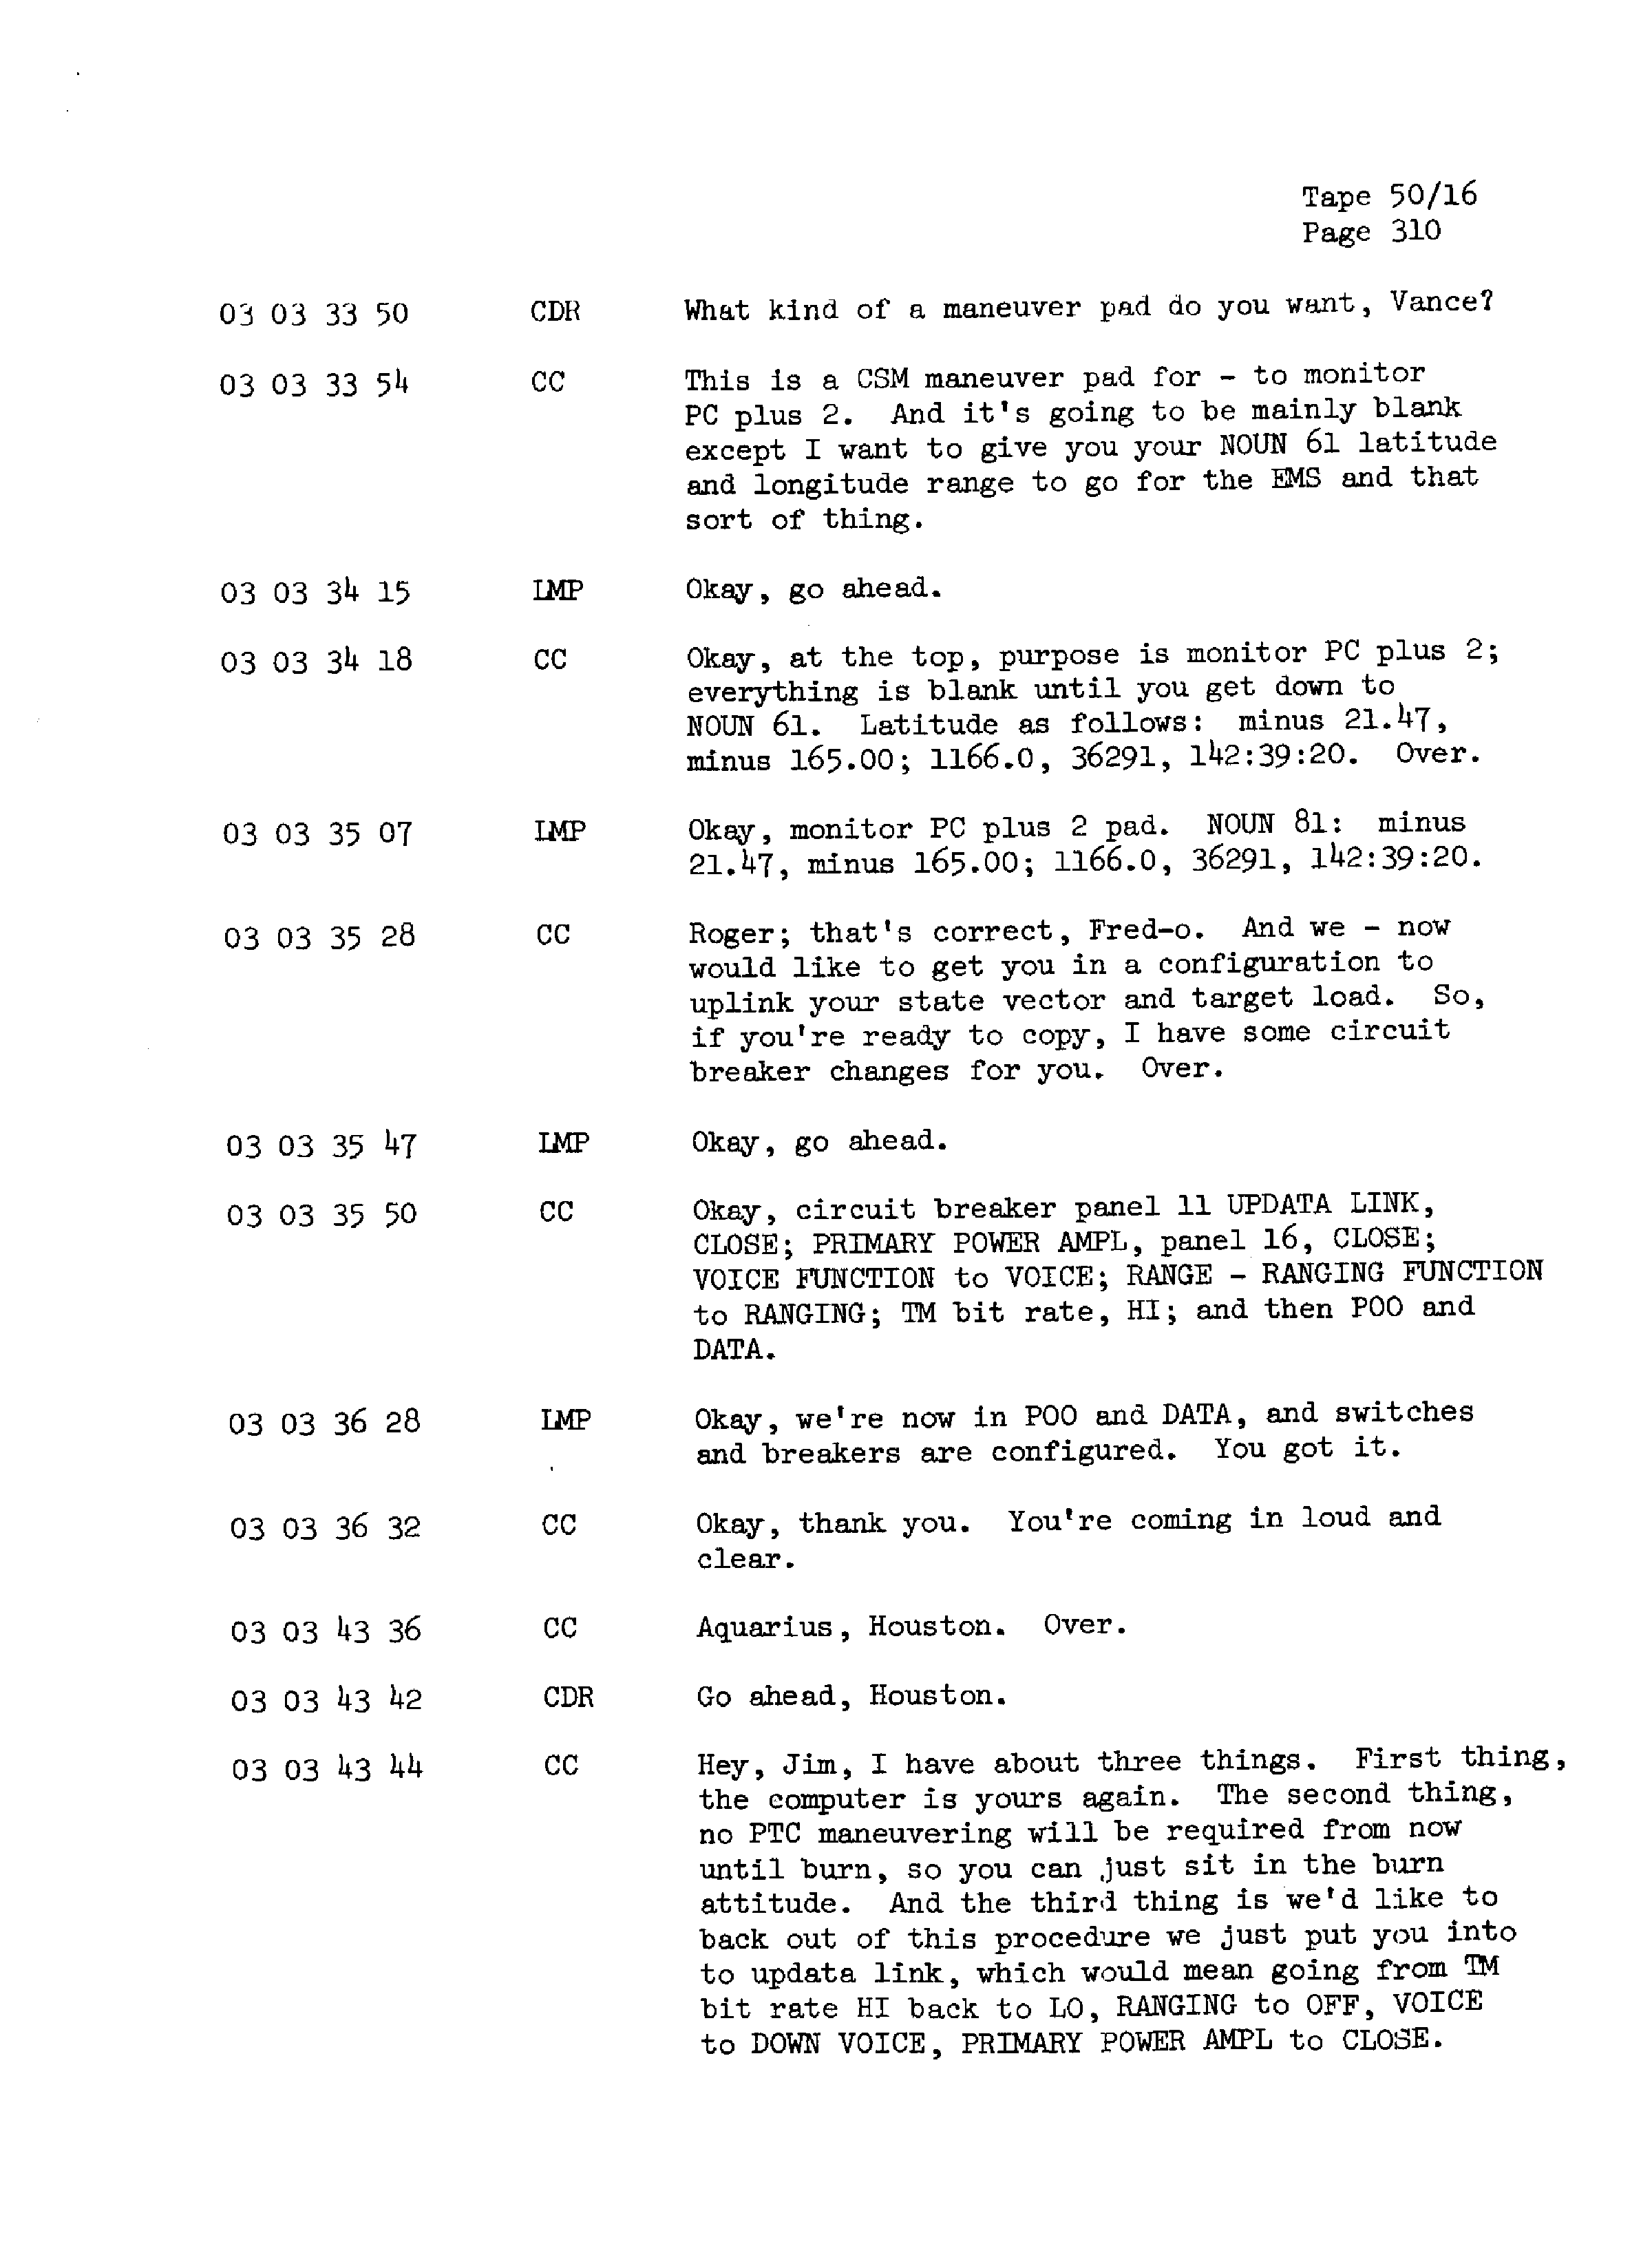 Page 317 of Apollo 13’s original transcript